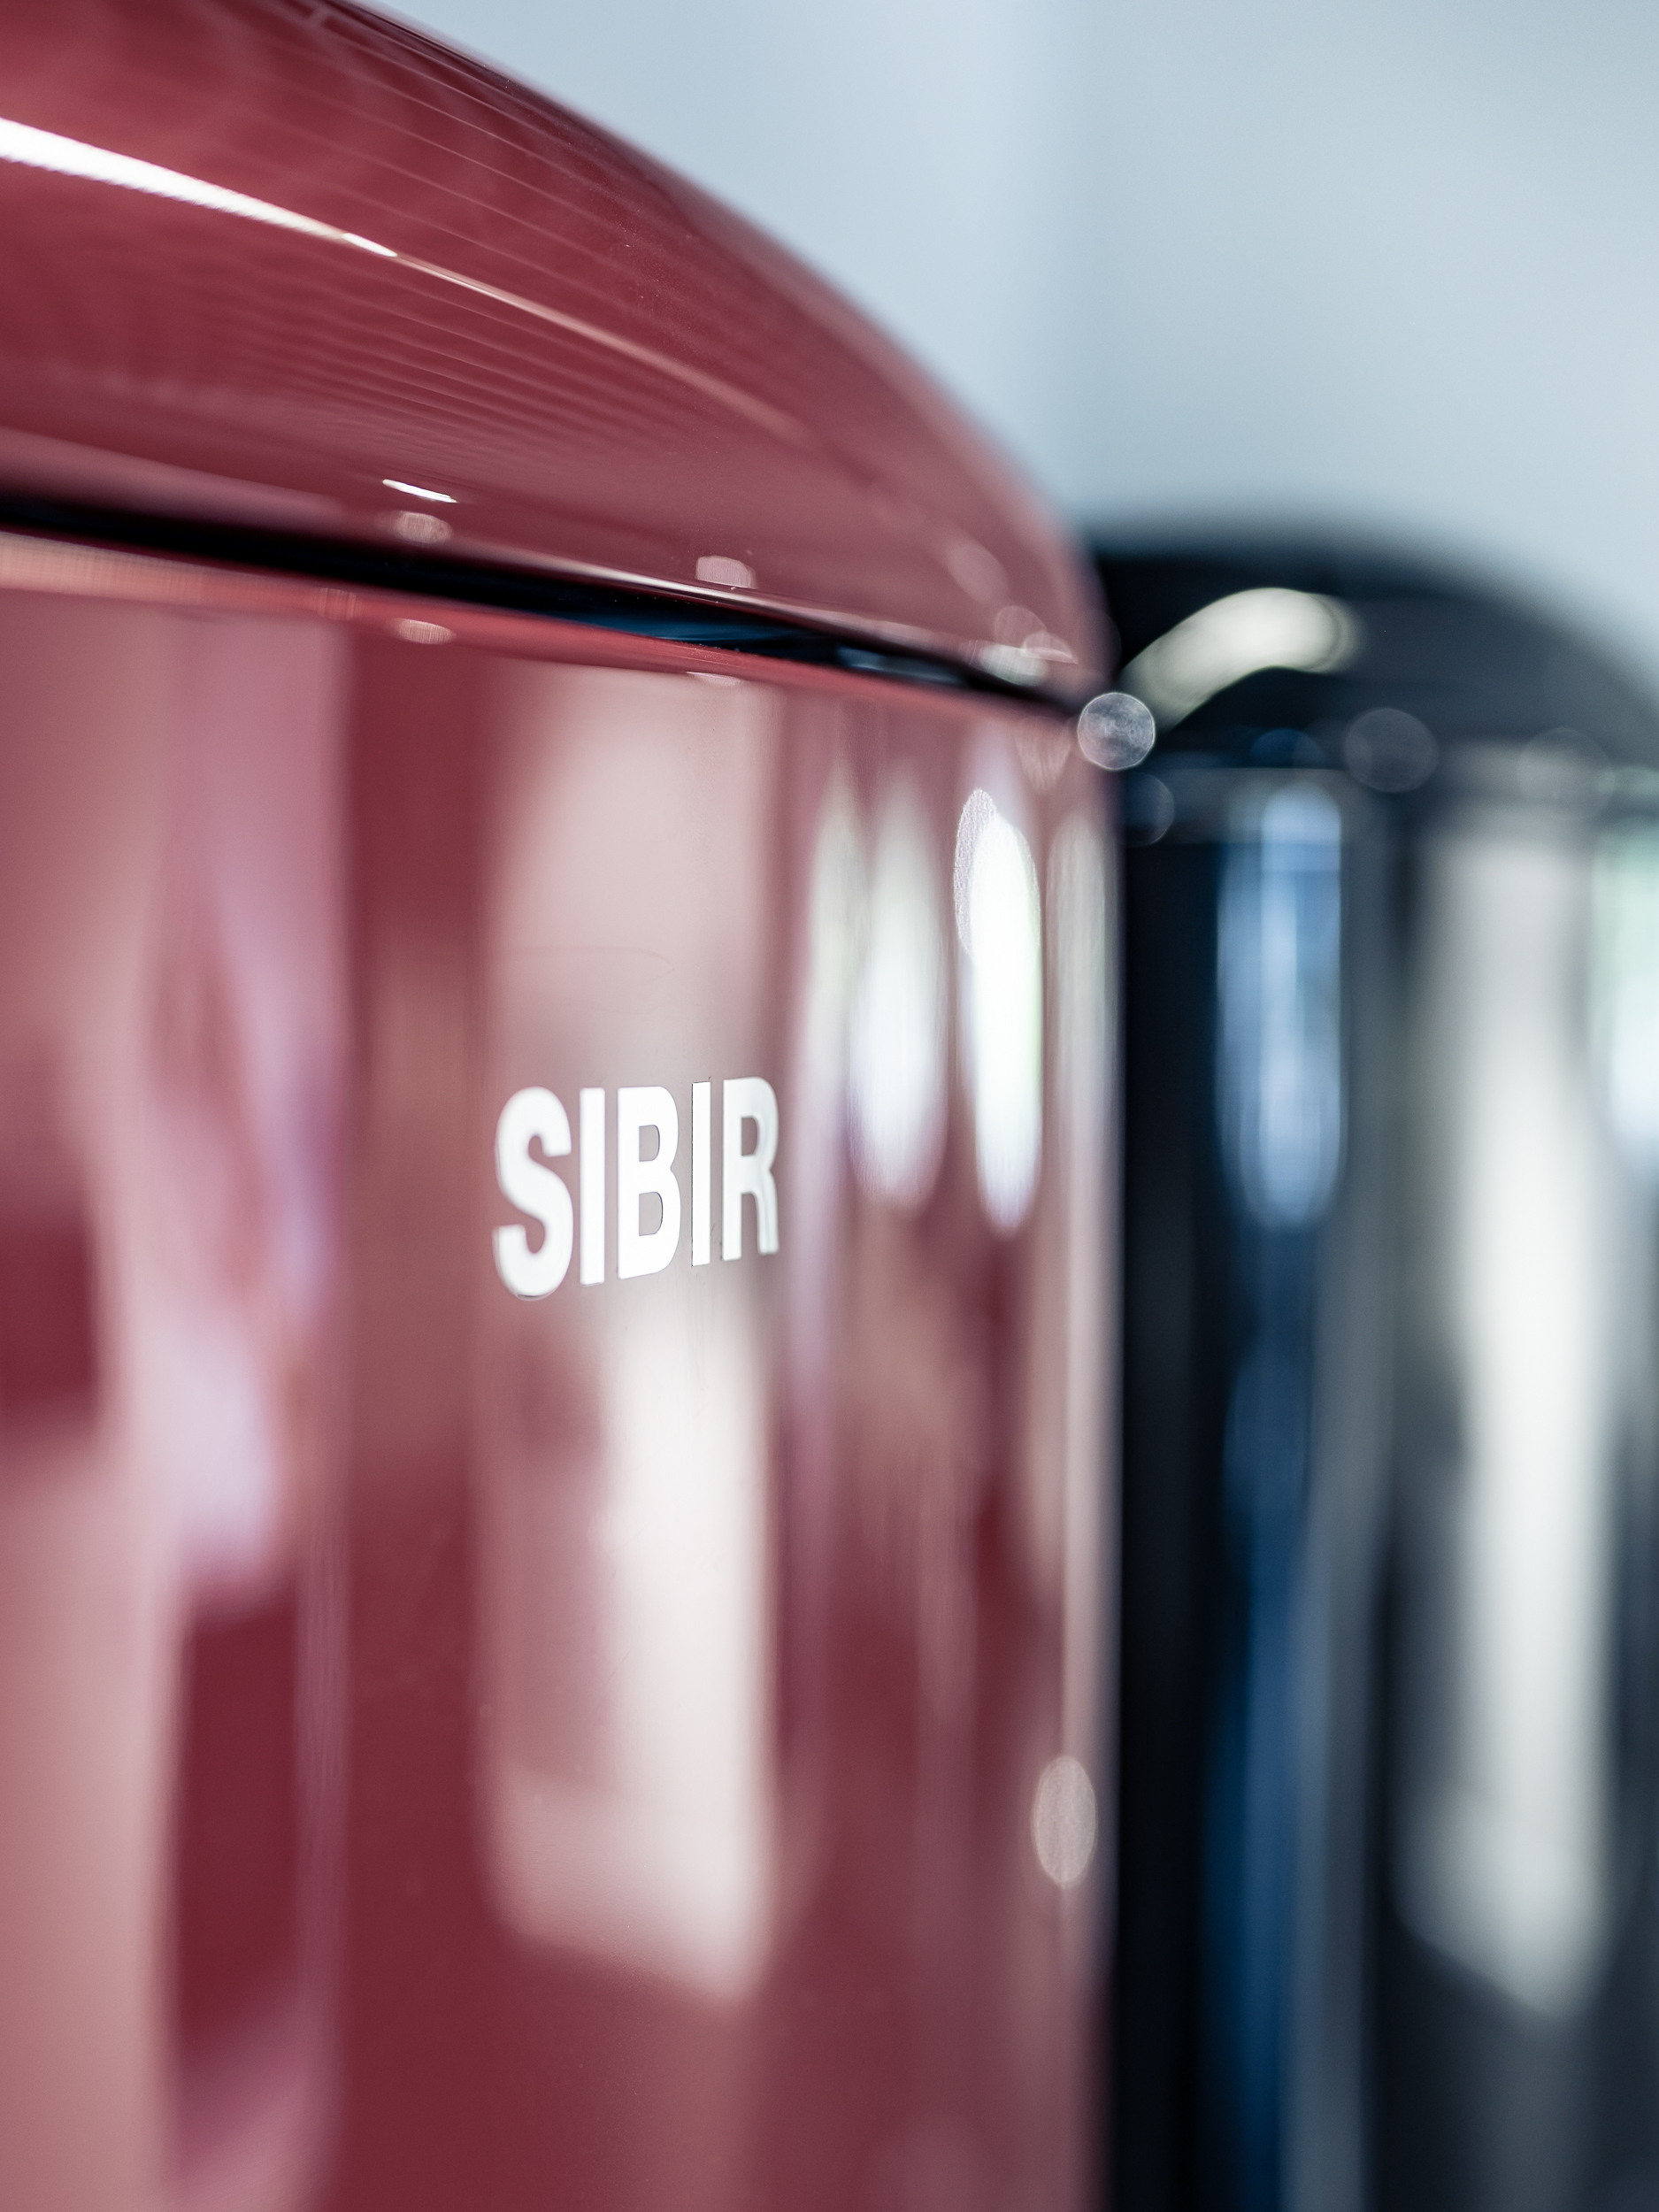 SIBIR oldtimer réfrigérateur bordeaux